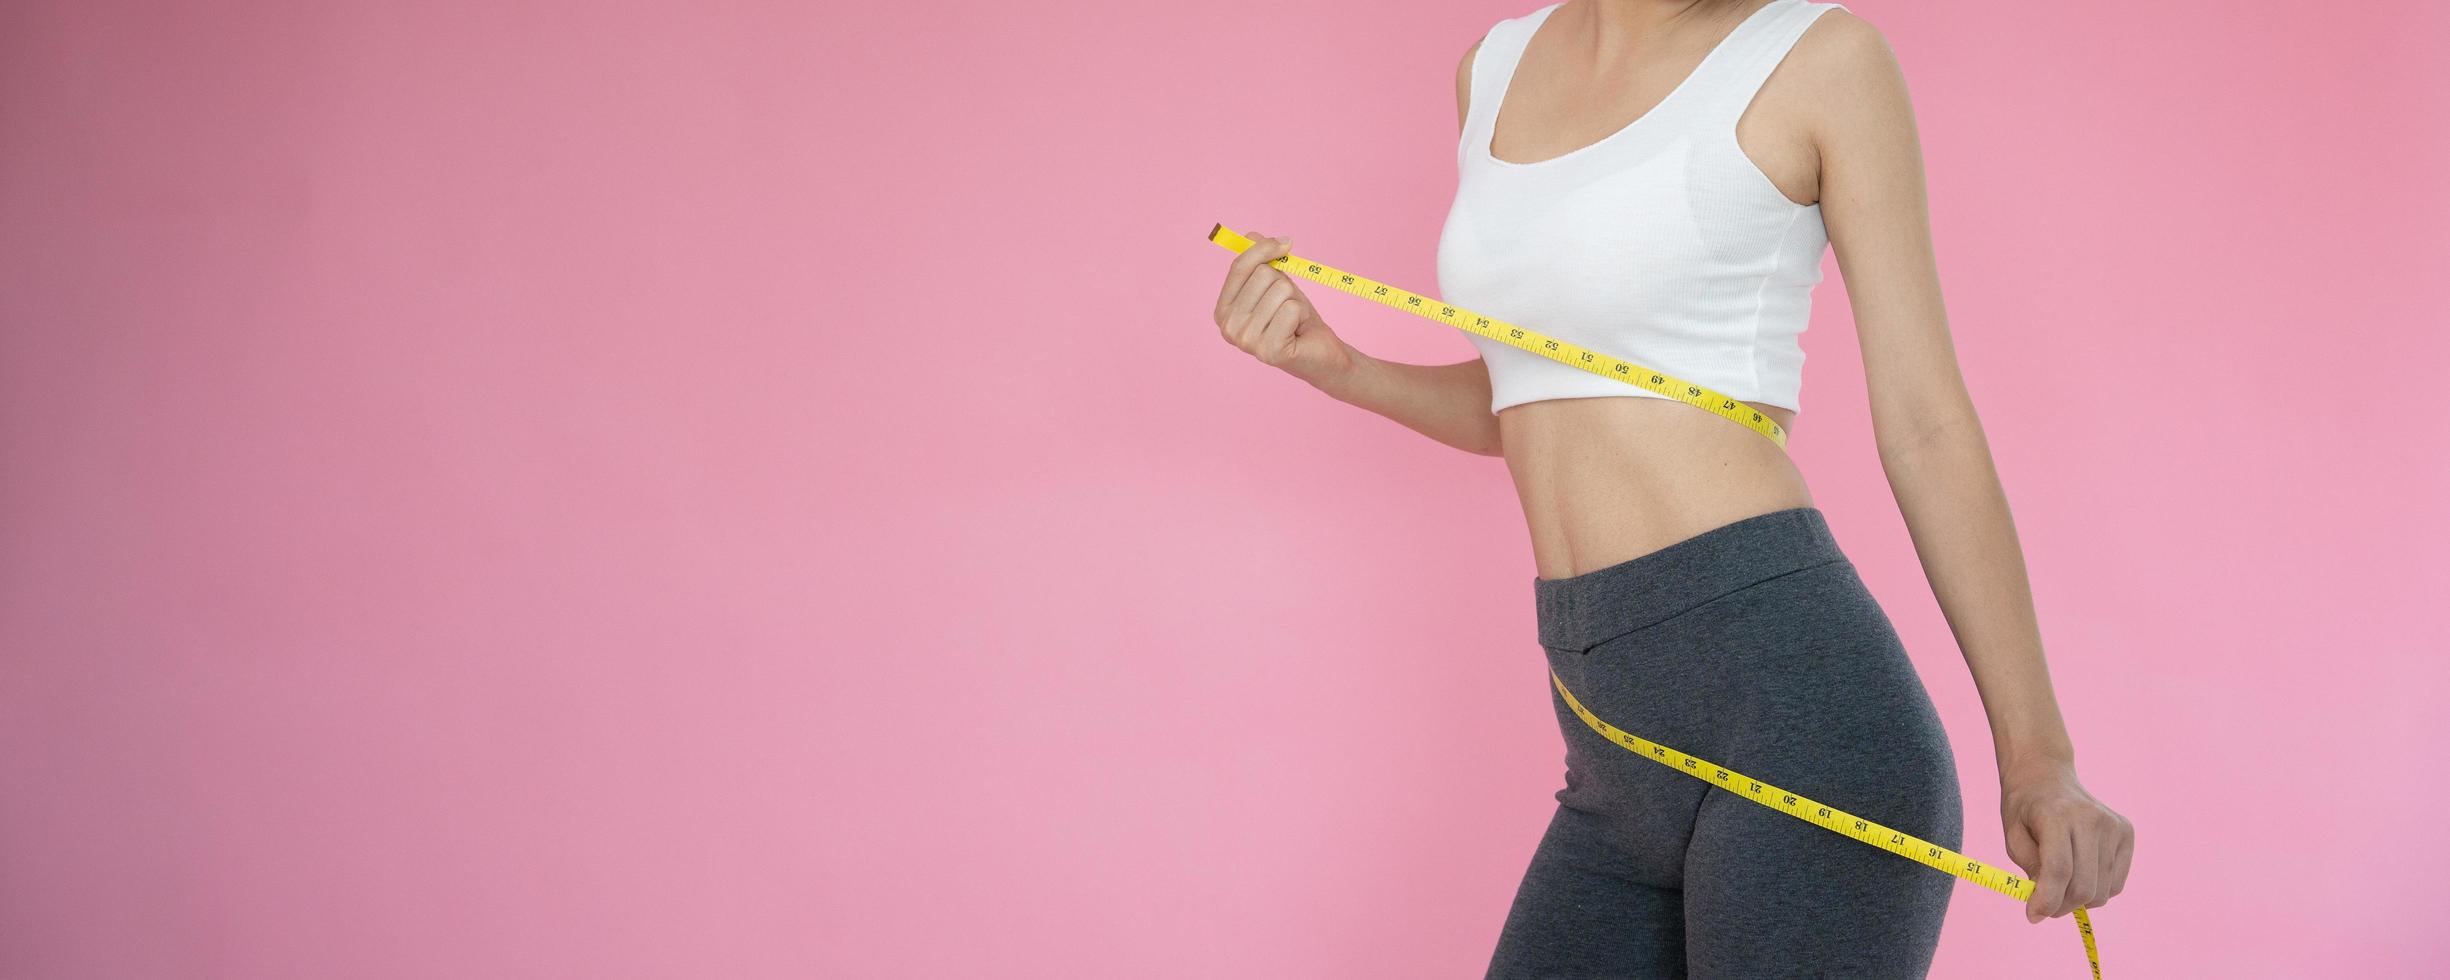 mujer delgada en ropa deportiva mide su cintura usando cinta métrica sobre fondo rosa. dieta mujer y lograr objetivos de pérdida de peso foto